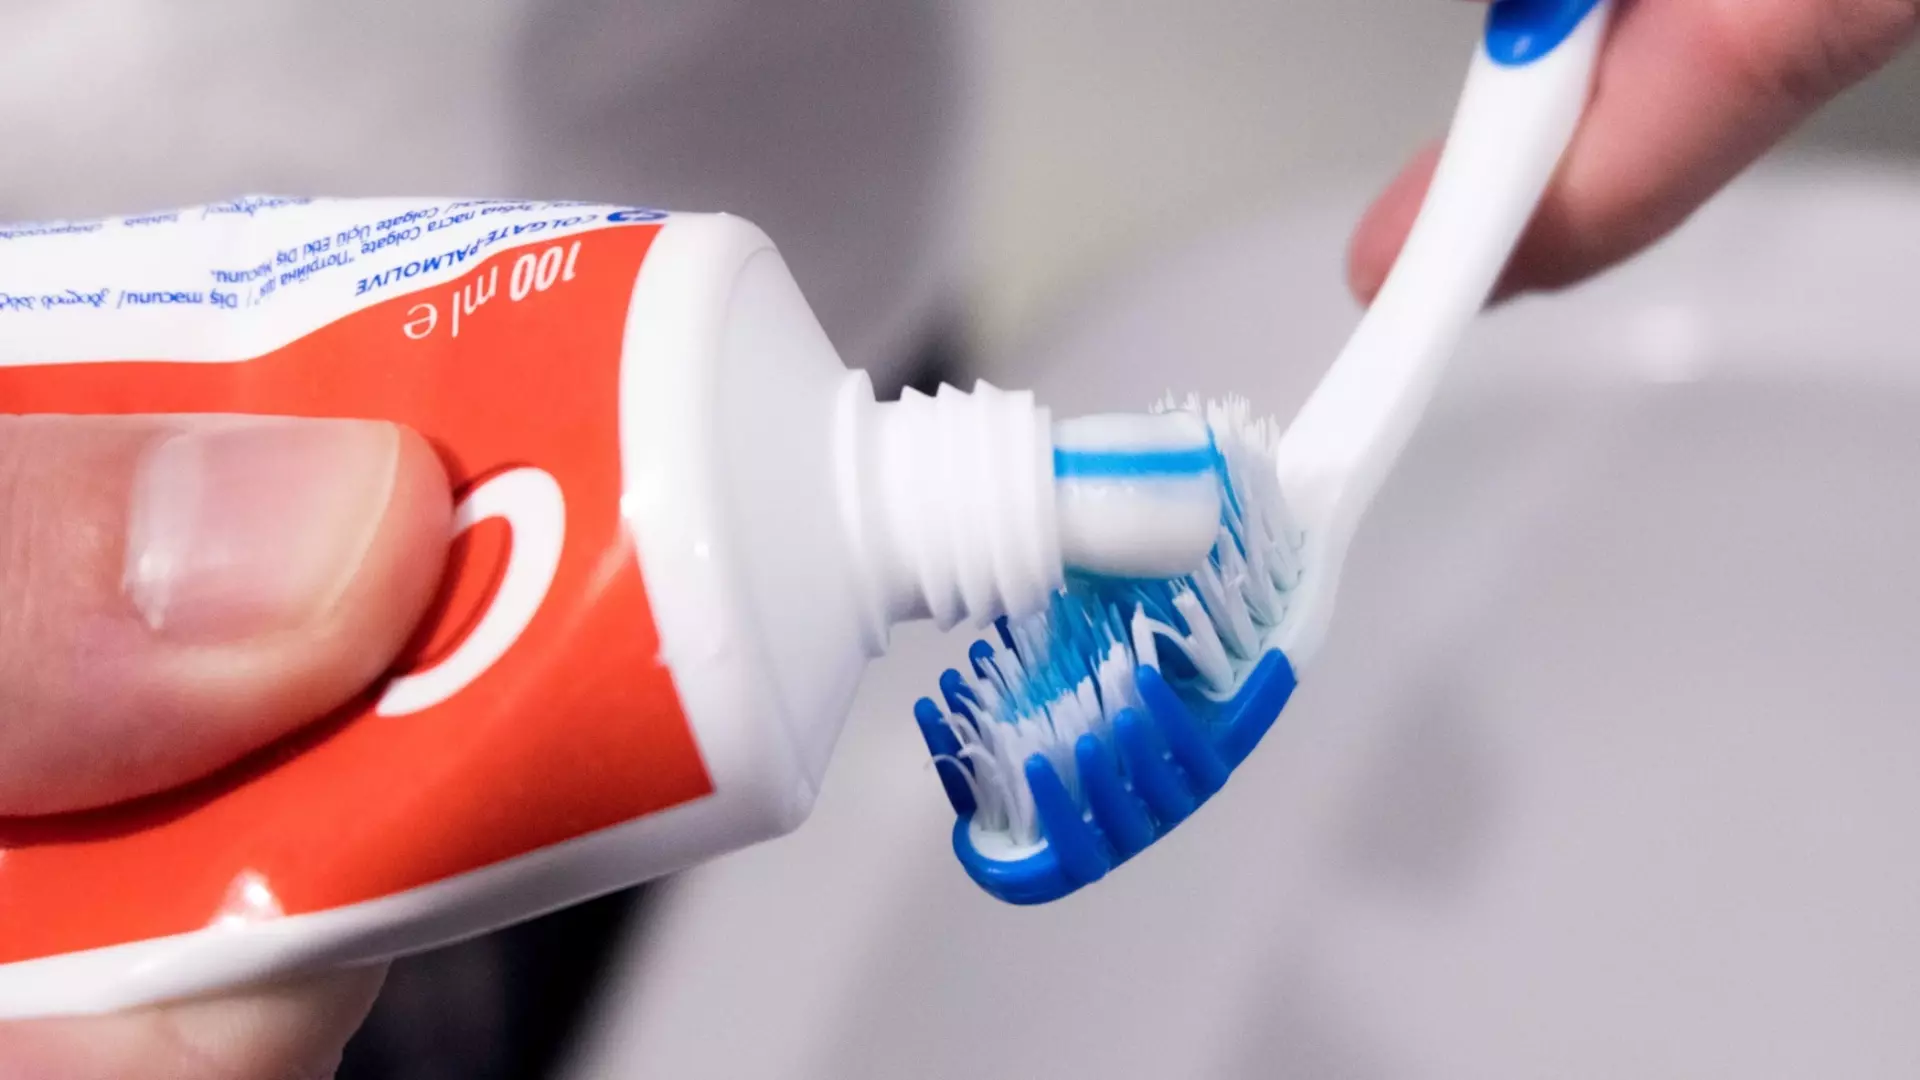 Фторид, содержащийся в зубной пасте, является ключевым компонентом для укрепления эмали и предотвращения кариеса